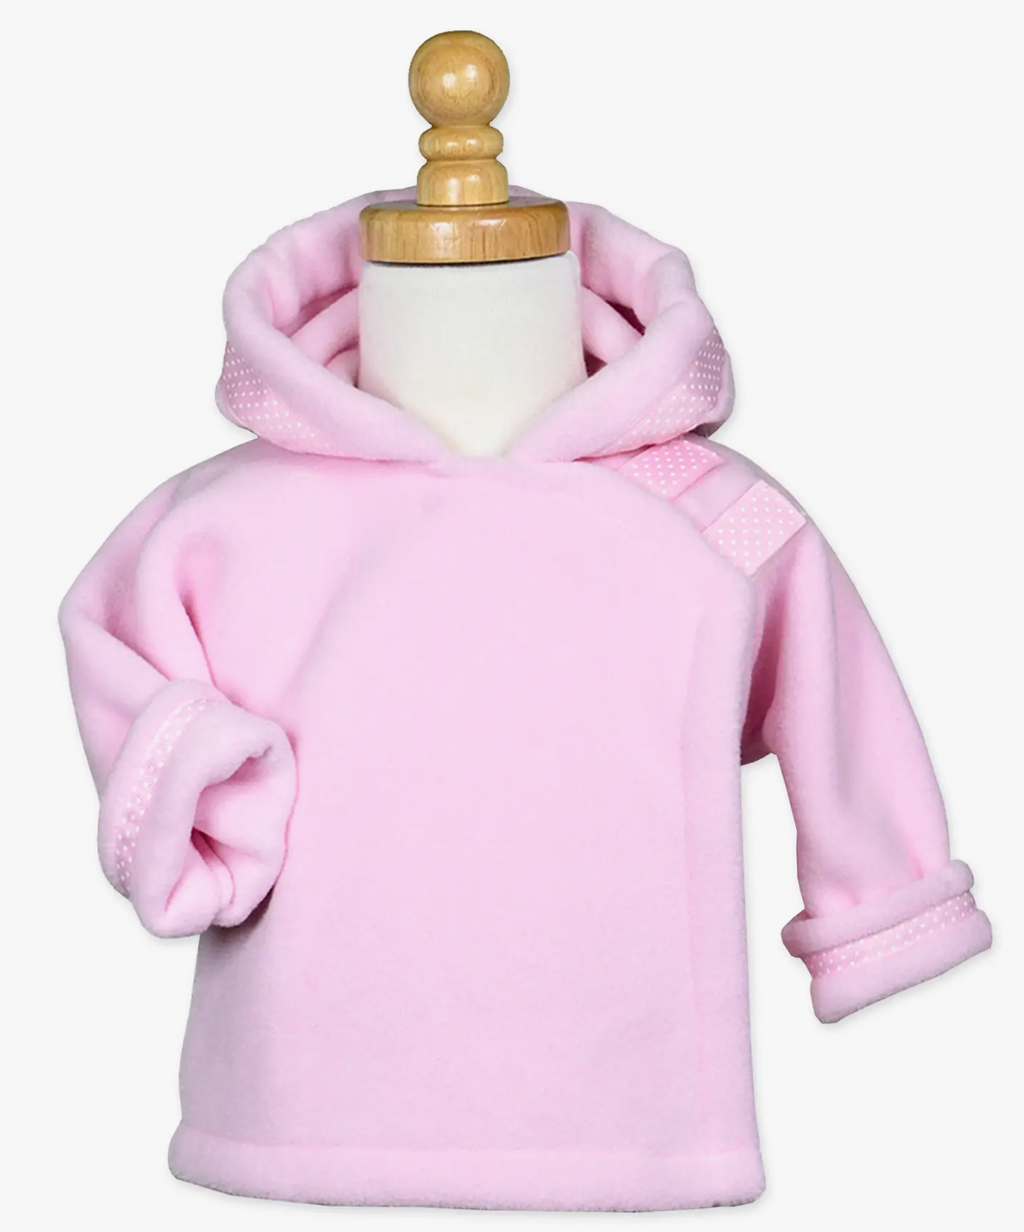 Widgeon WarmPlus Fleece Jacket with Dot Ribbon in Assorted Colors